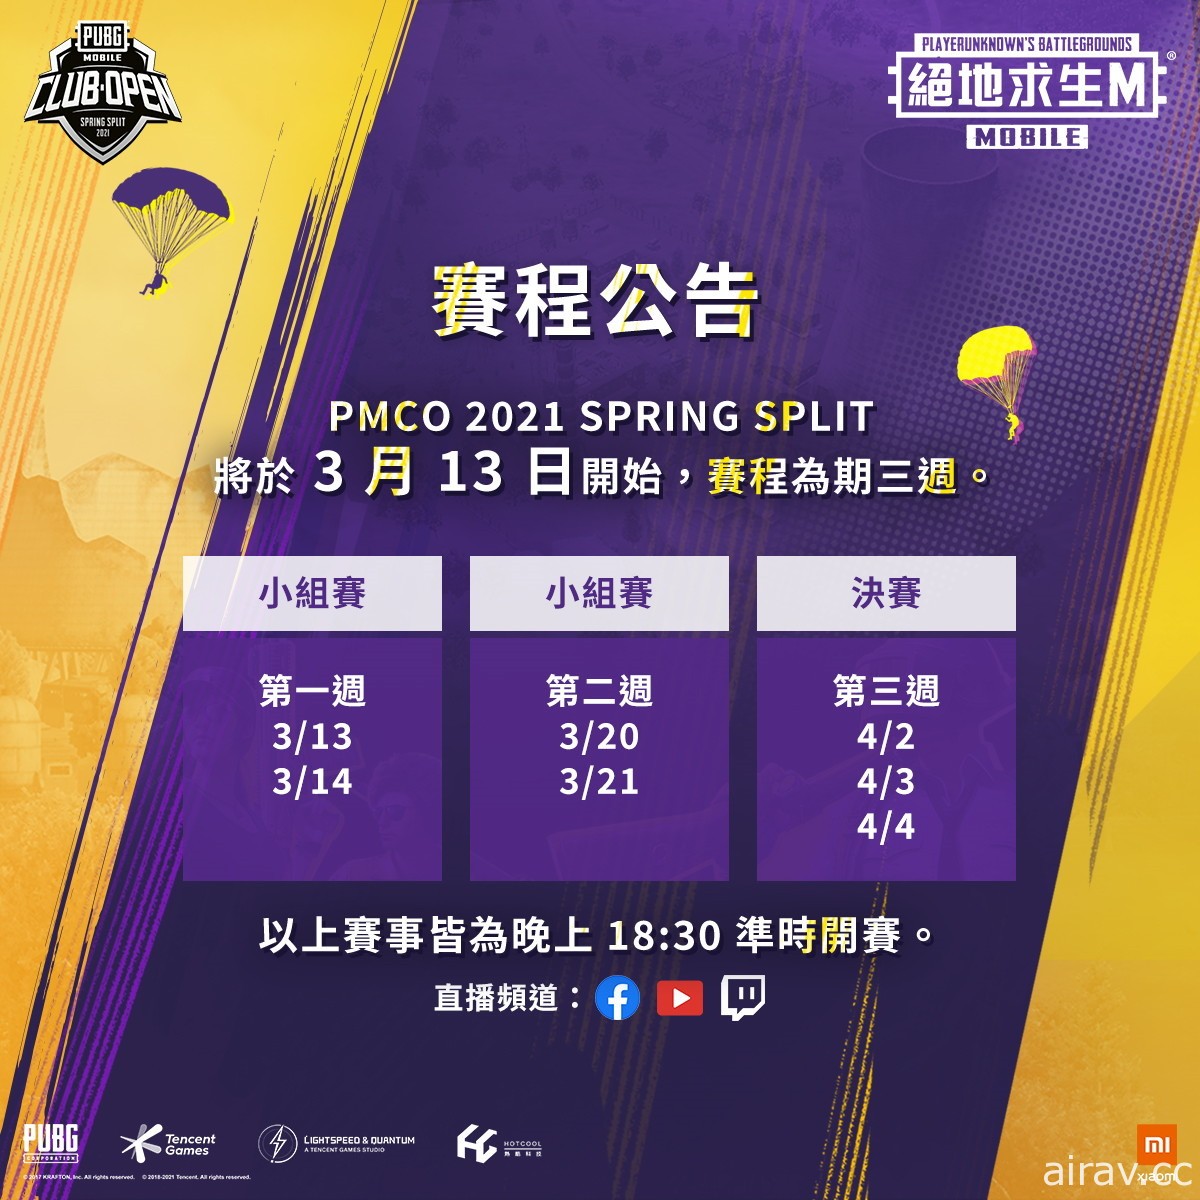 《絕地求生 M》 PMCO HMT 2021 春季盃 3 月 13 日開打